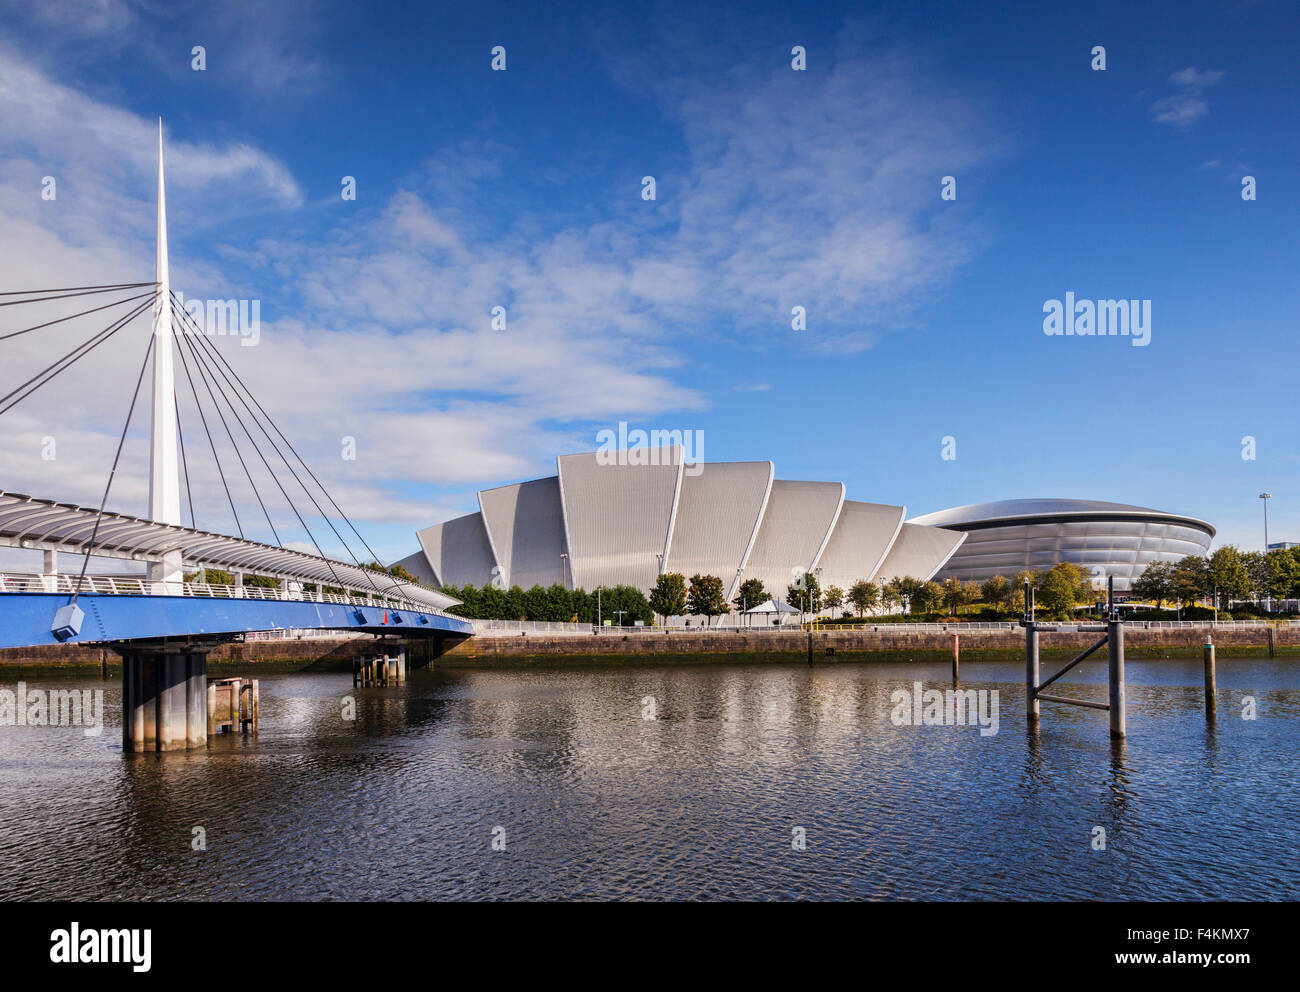 Le campane di ponte; il SECC - Scottish Exhibition and Conference Centre e il SSE idro sulle rive del fiume Clyde, Glasgow, Foto Stock